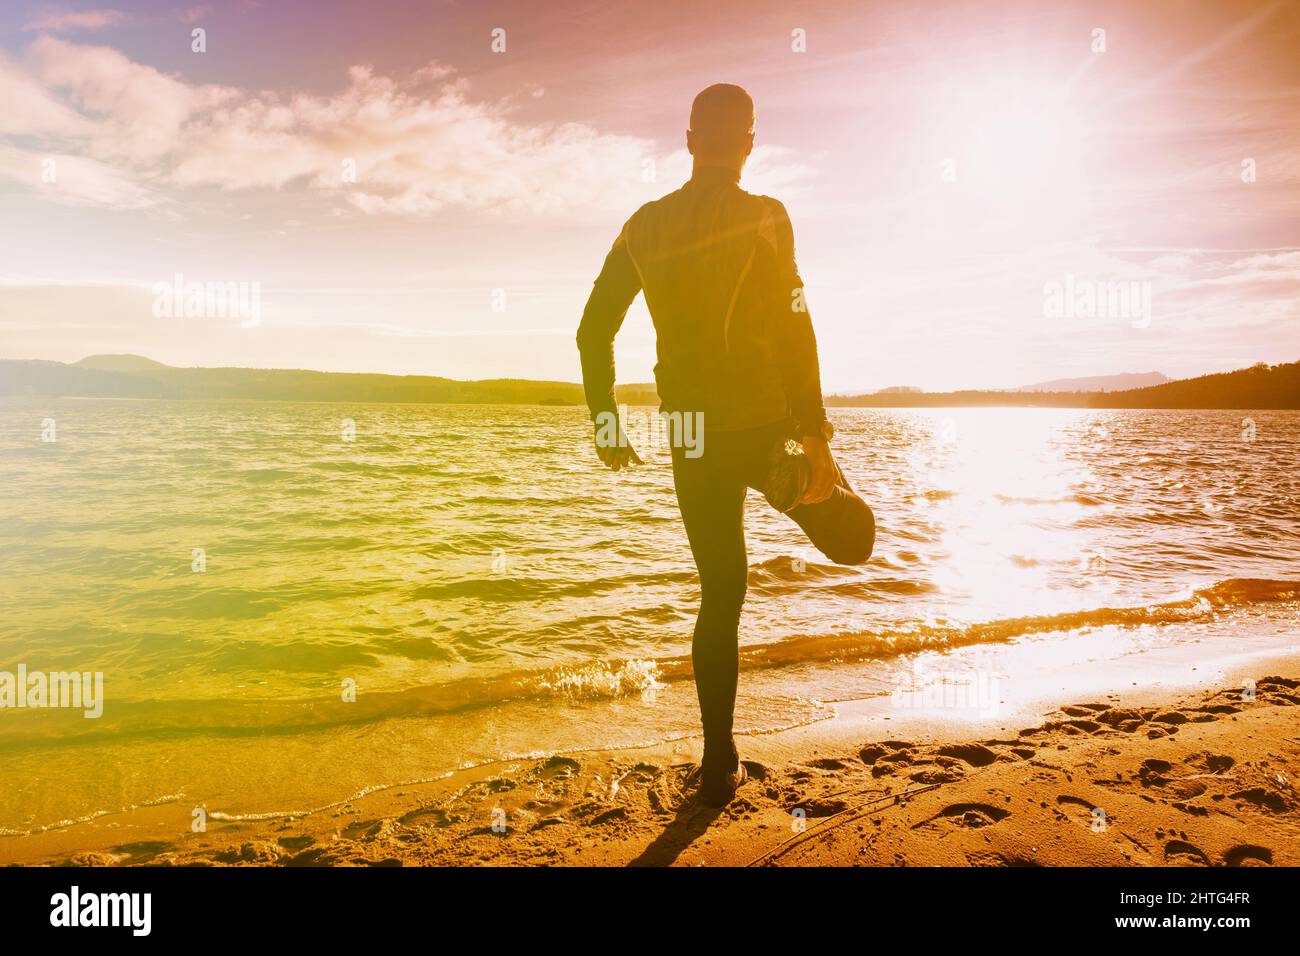 Corredor que estira la rodilla y la pierna. Ejercicios del hombre en el lago. Iluminación abstracta, llamaradas coloridas. Foto de stock